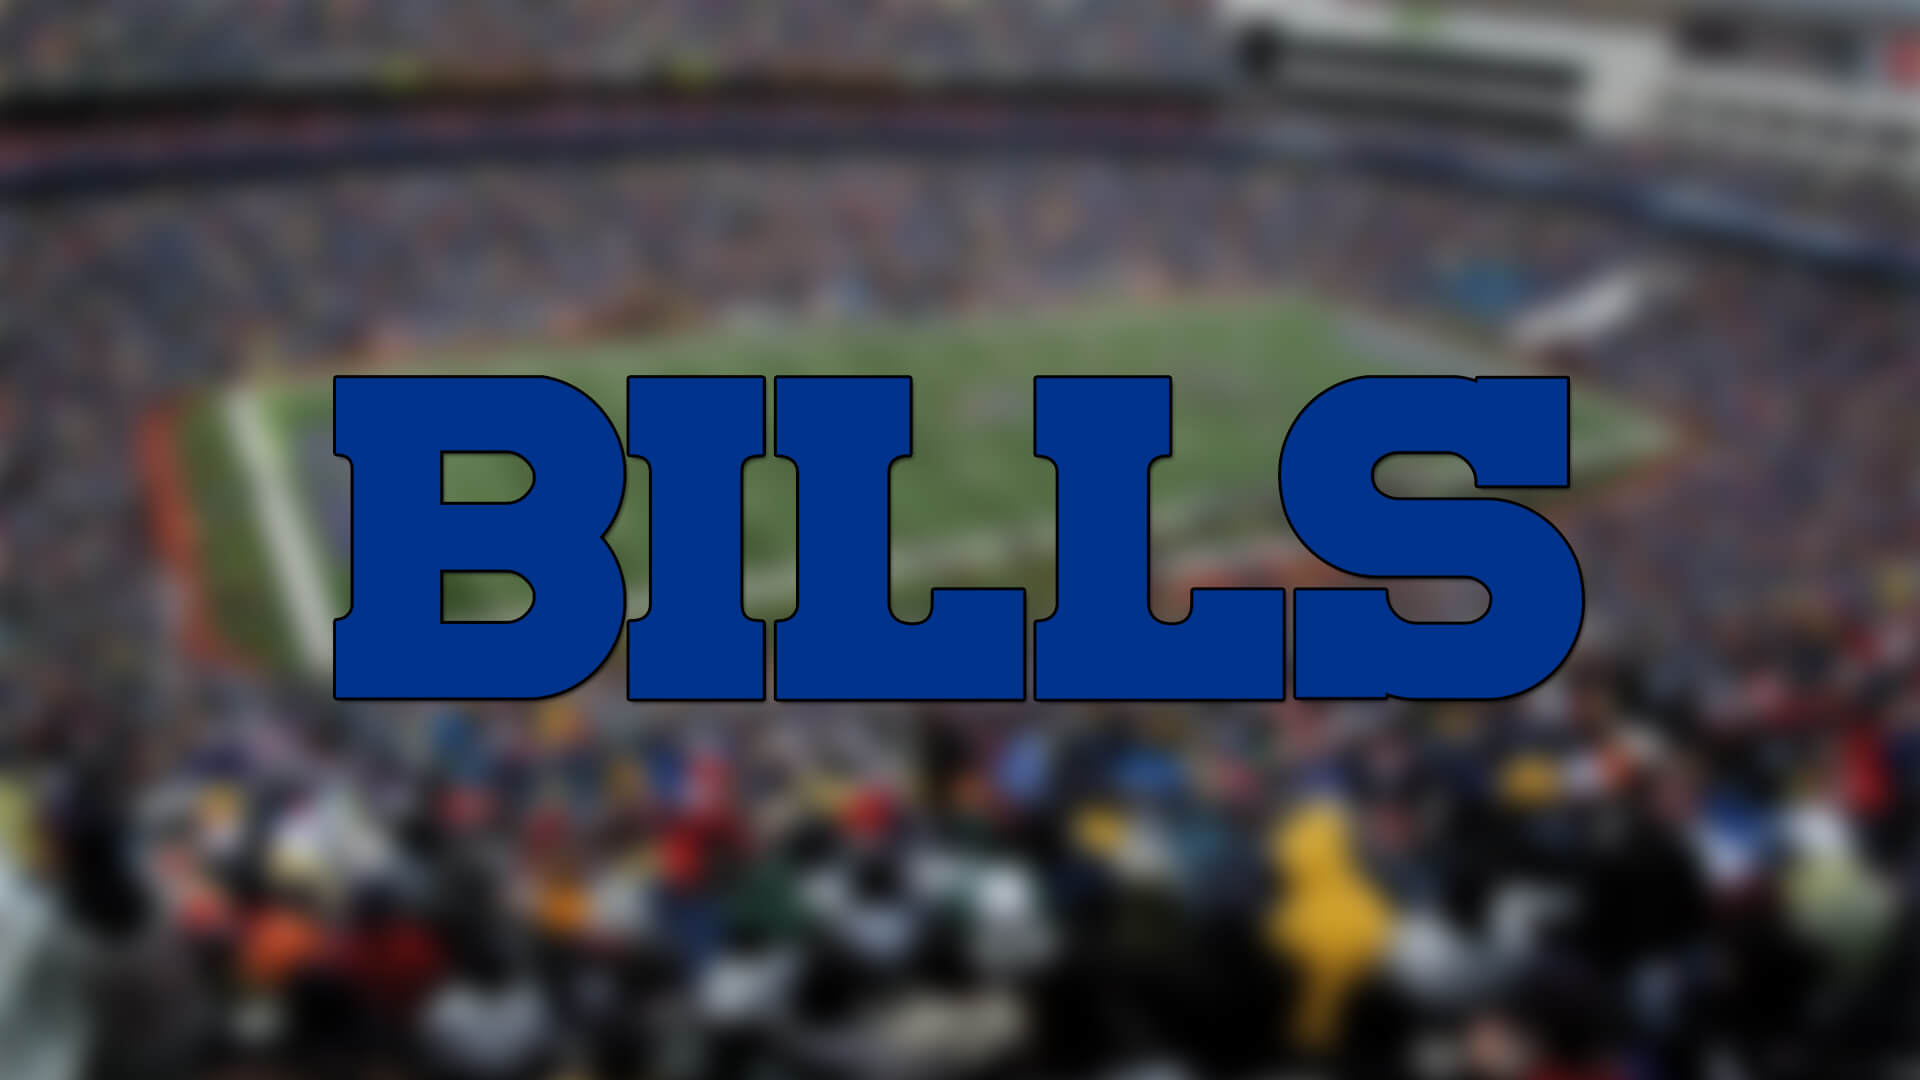 Buffalo Bills 2 Oyuncuyu Kadrosuna Kattı | Korumalı Futbol Türkiye